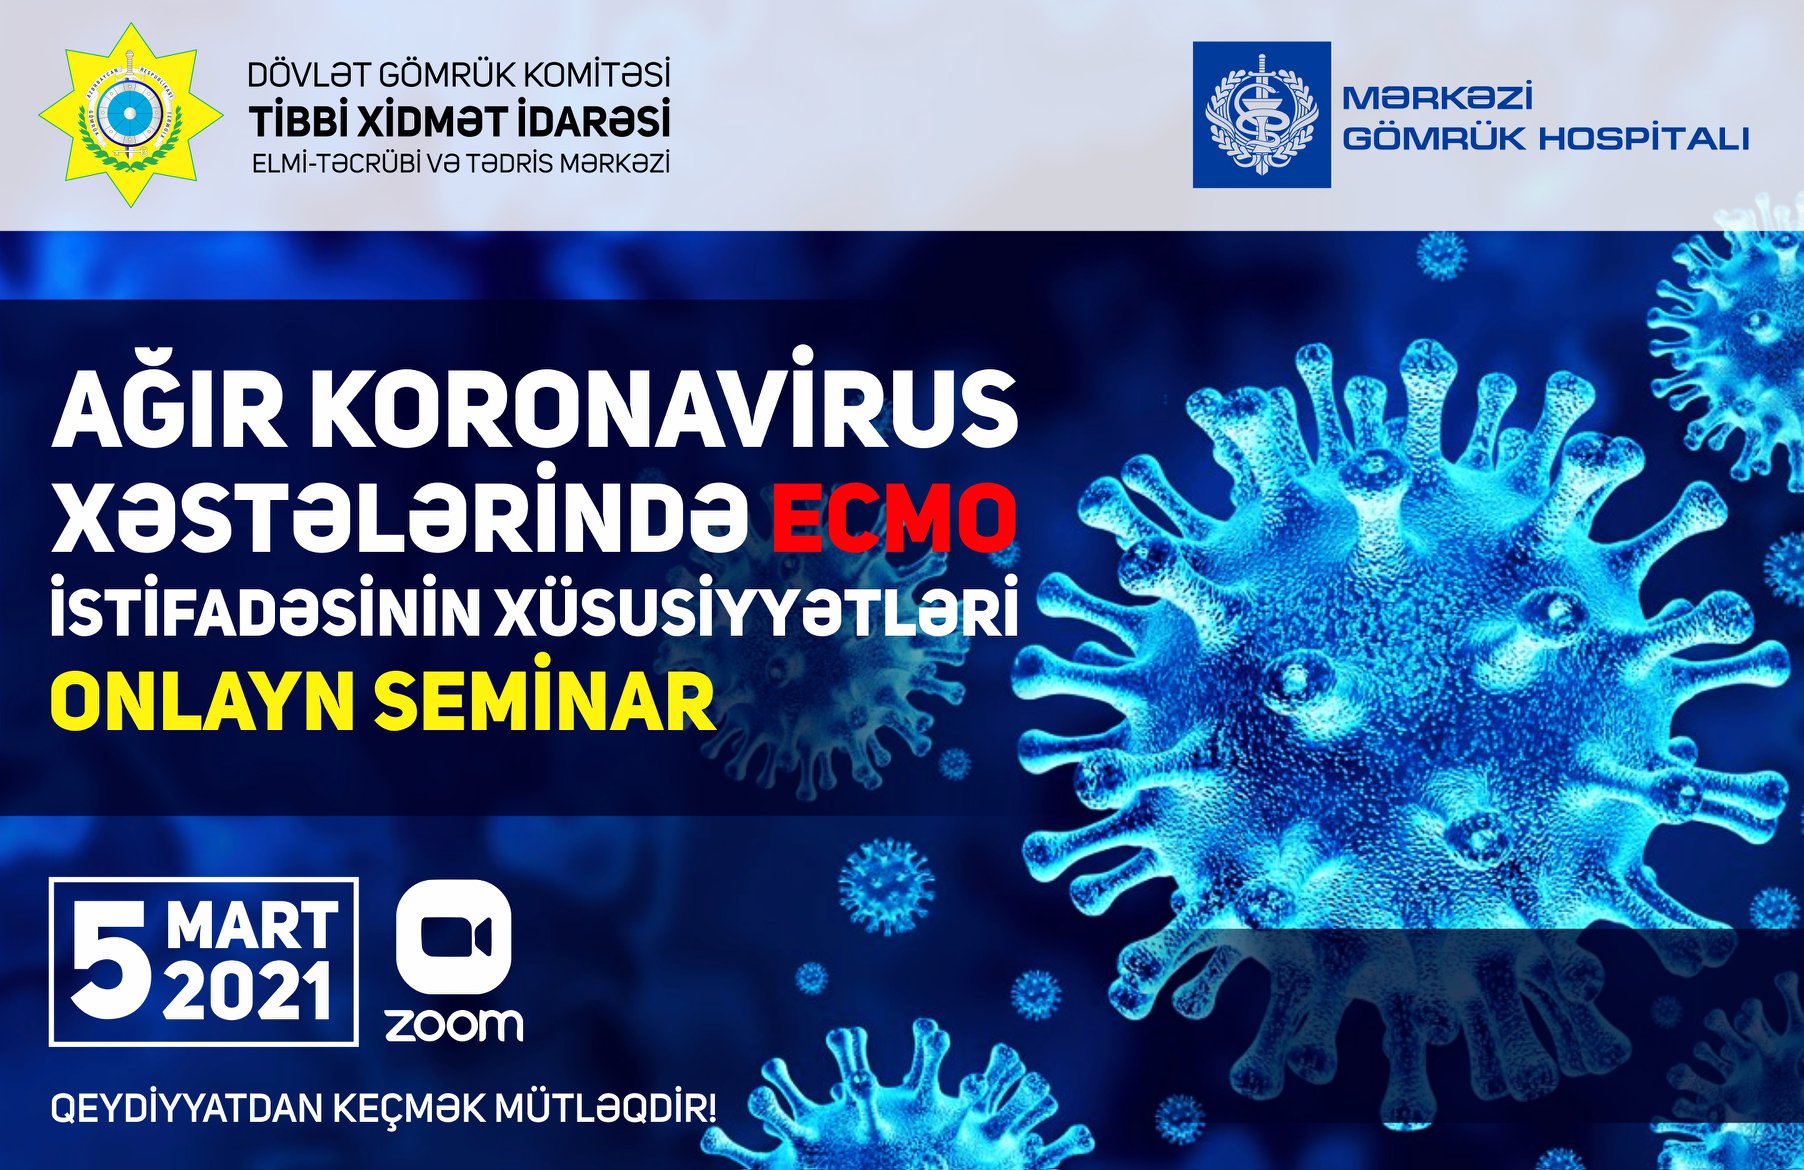 “Ağır koronavirus xəstələrində ECMO istifadəsinin xüsusiyyətləri” mövzusunda onlayn seminar keçiriləcək